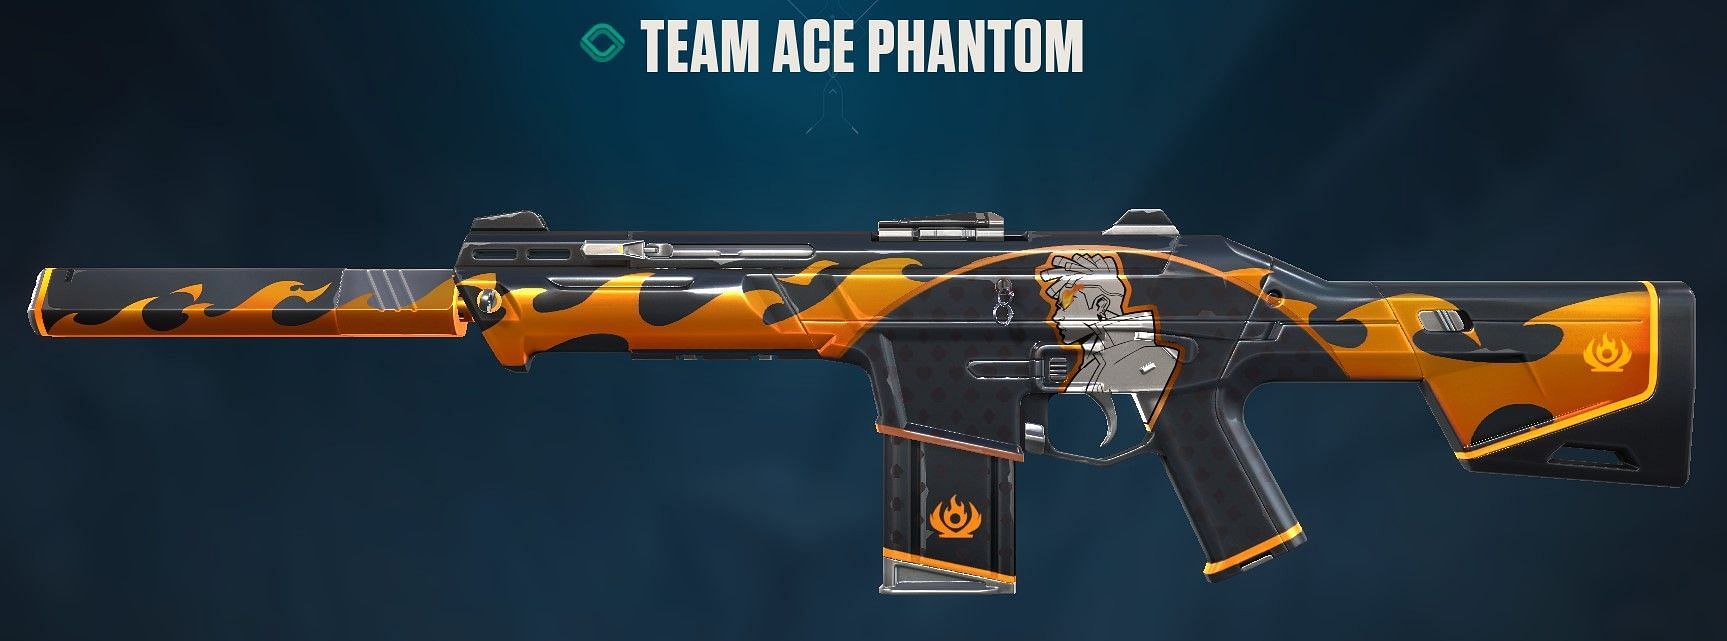 Team Ace Phantom (Image via Riot Games)